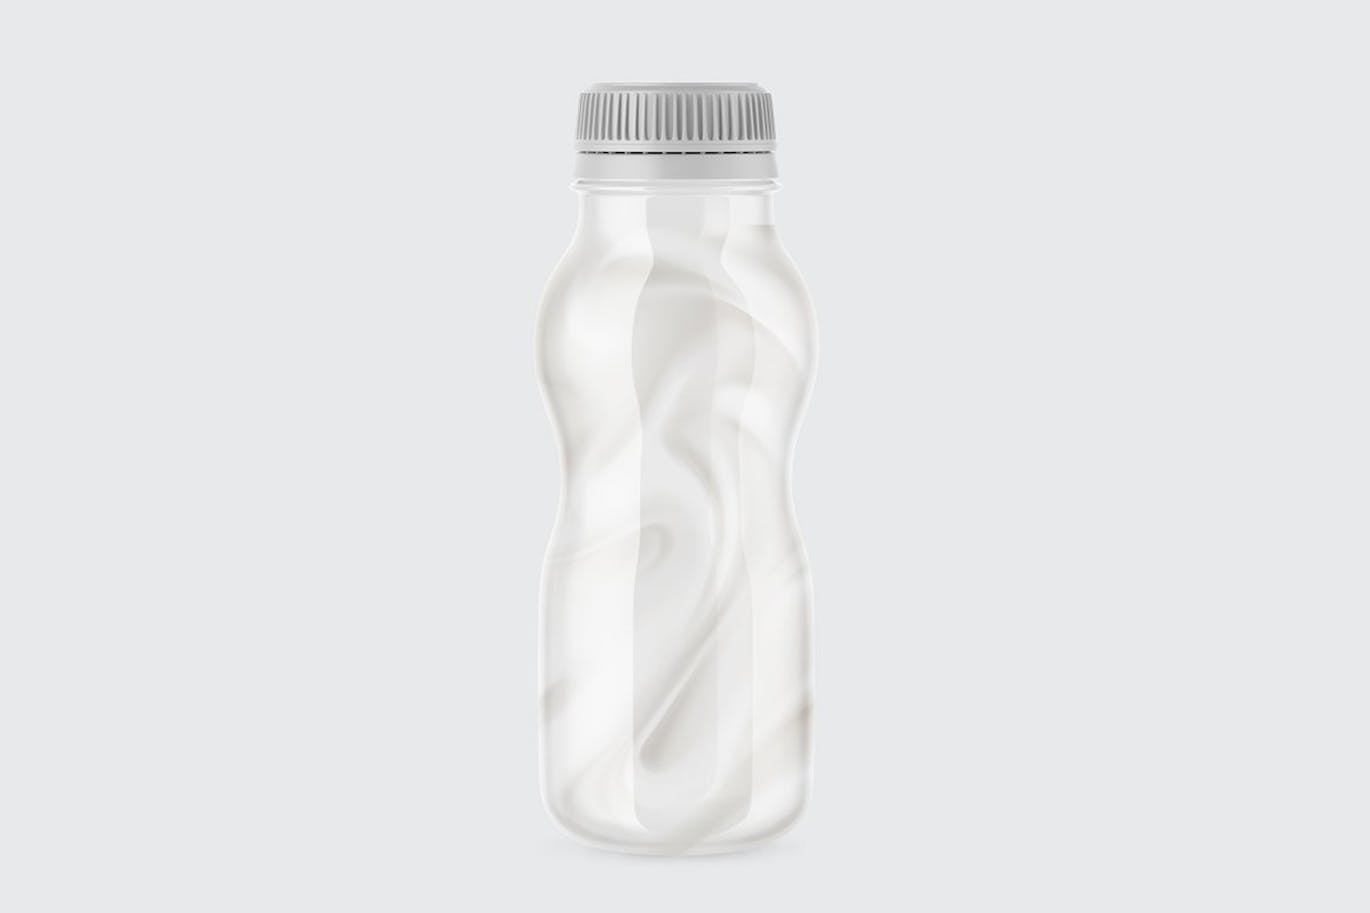 哑光酸奶瓶包装设计样机 Matte Yogurt Bottle Mockup 样机素材 第7张